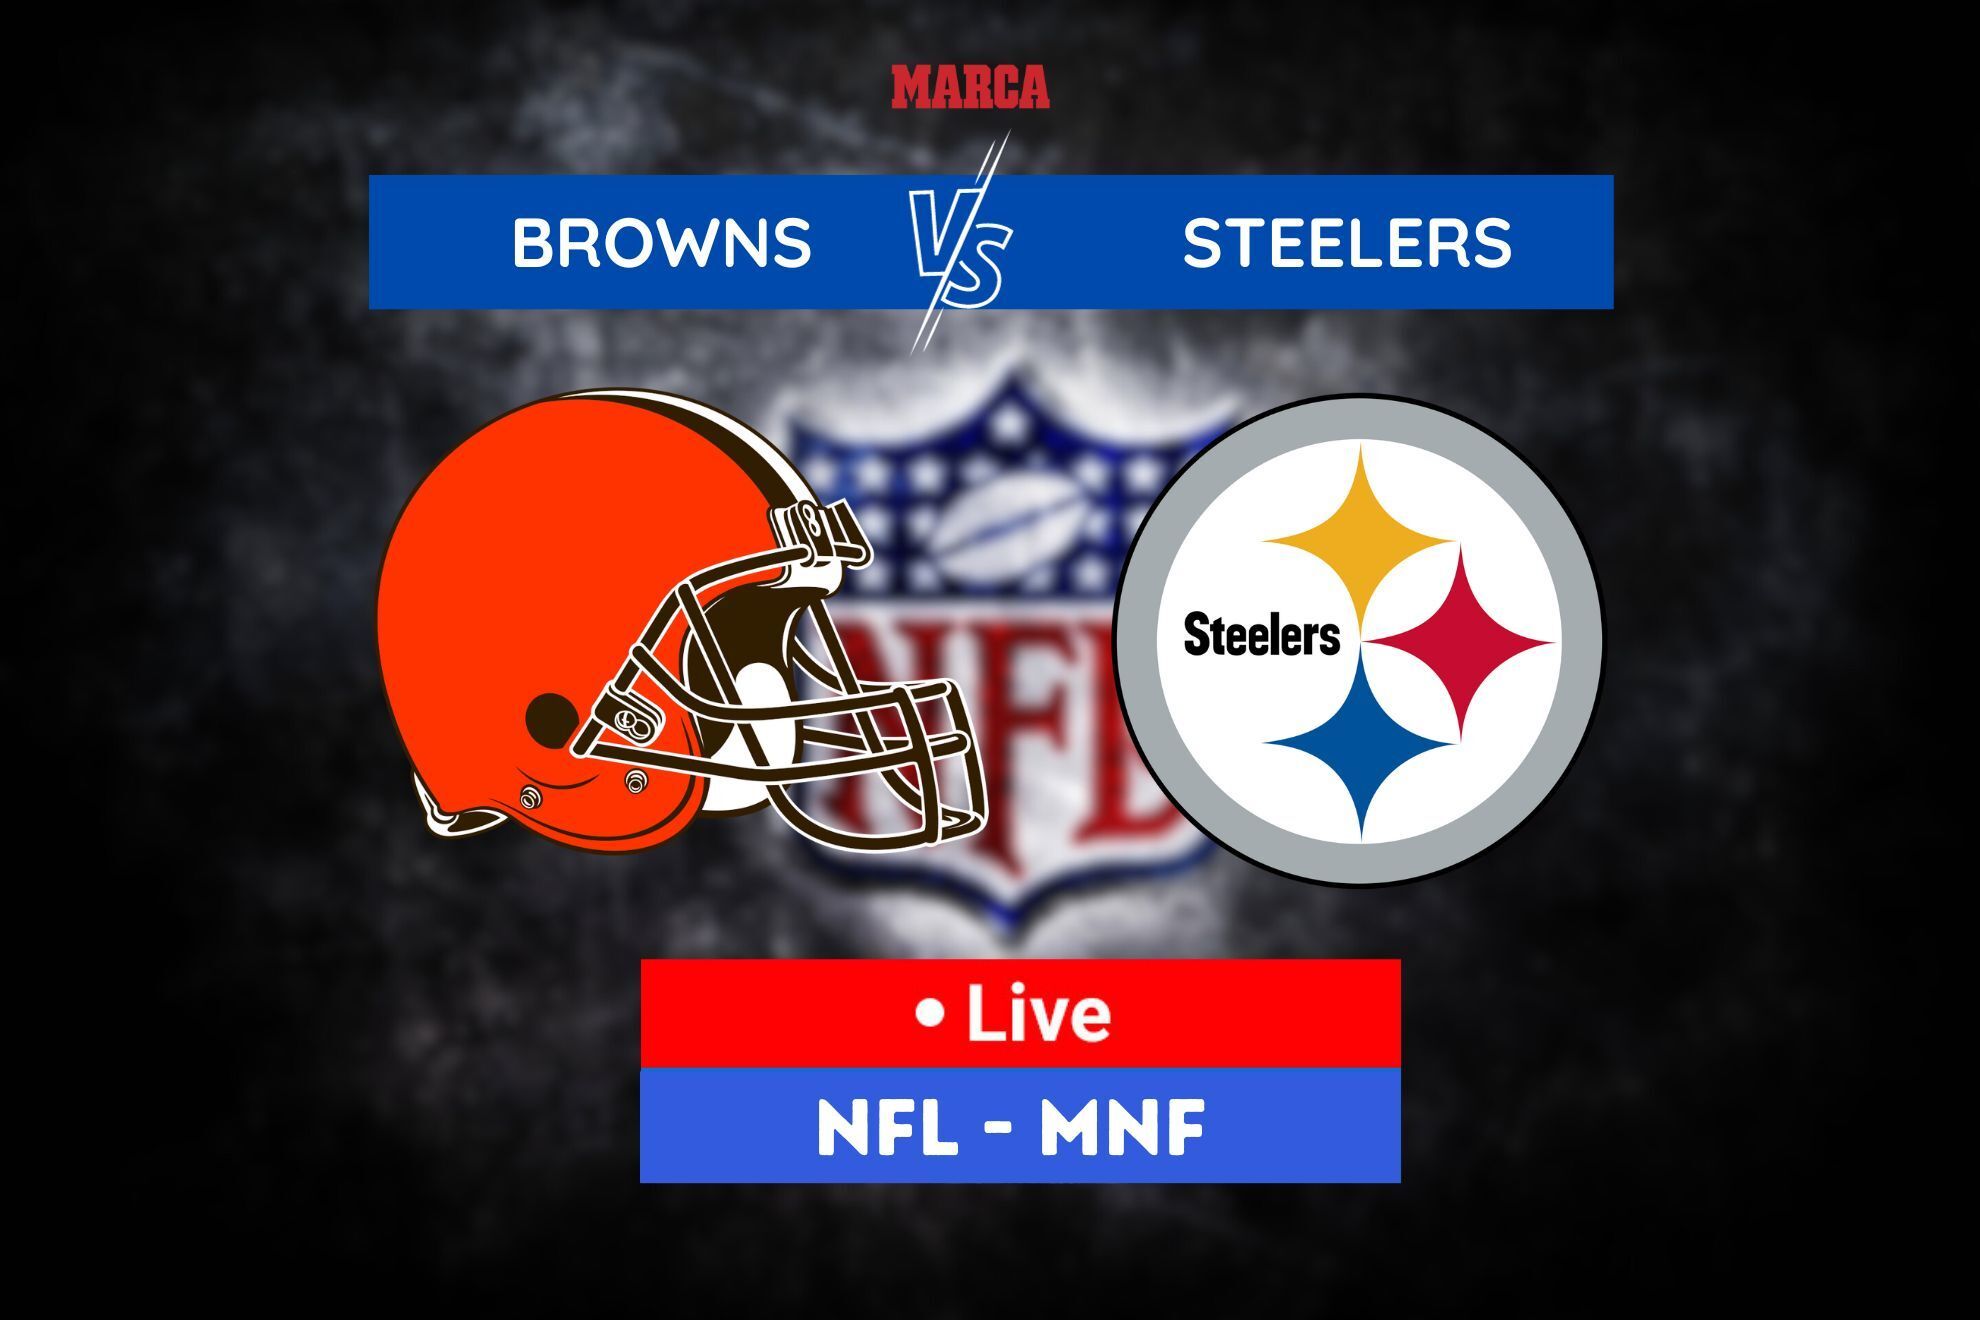 Browns - Steelers: NFL Regular Season Week 2